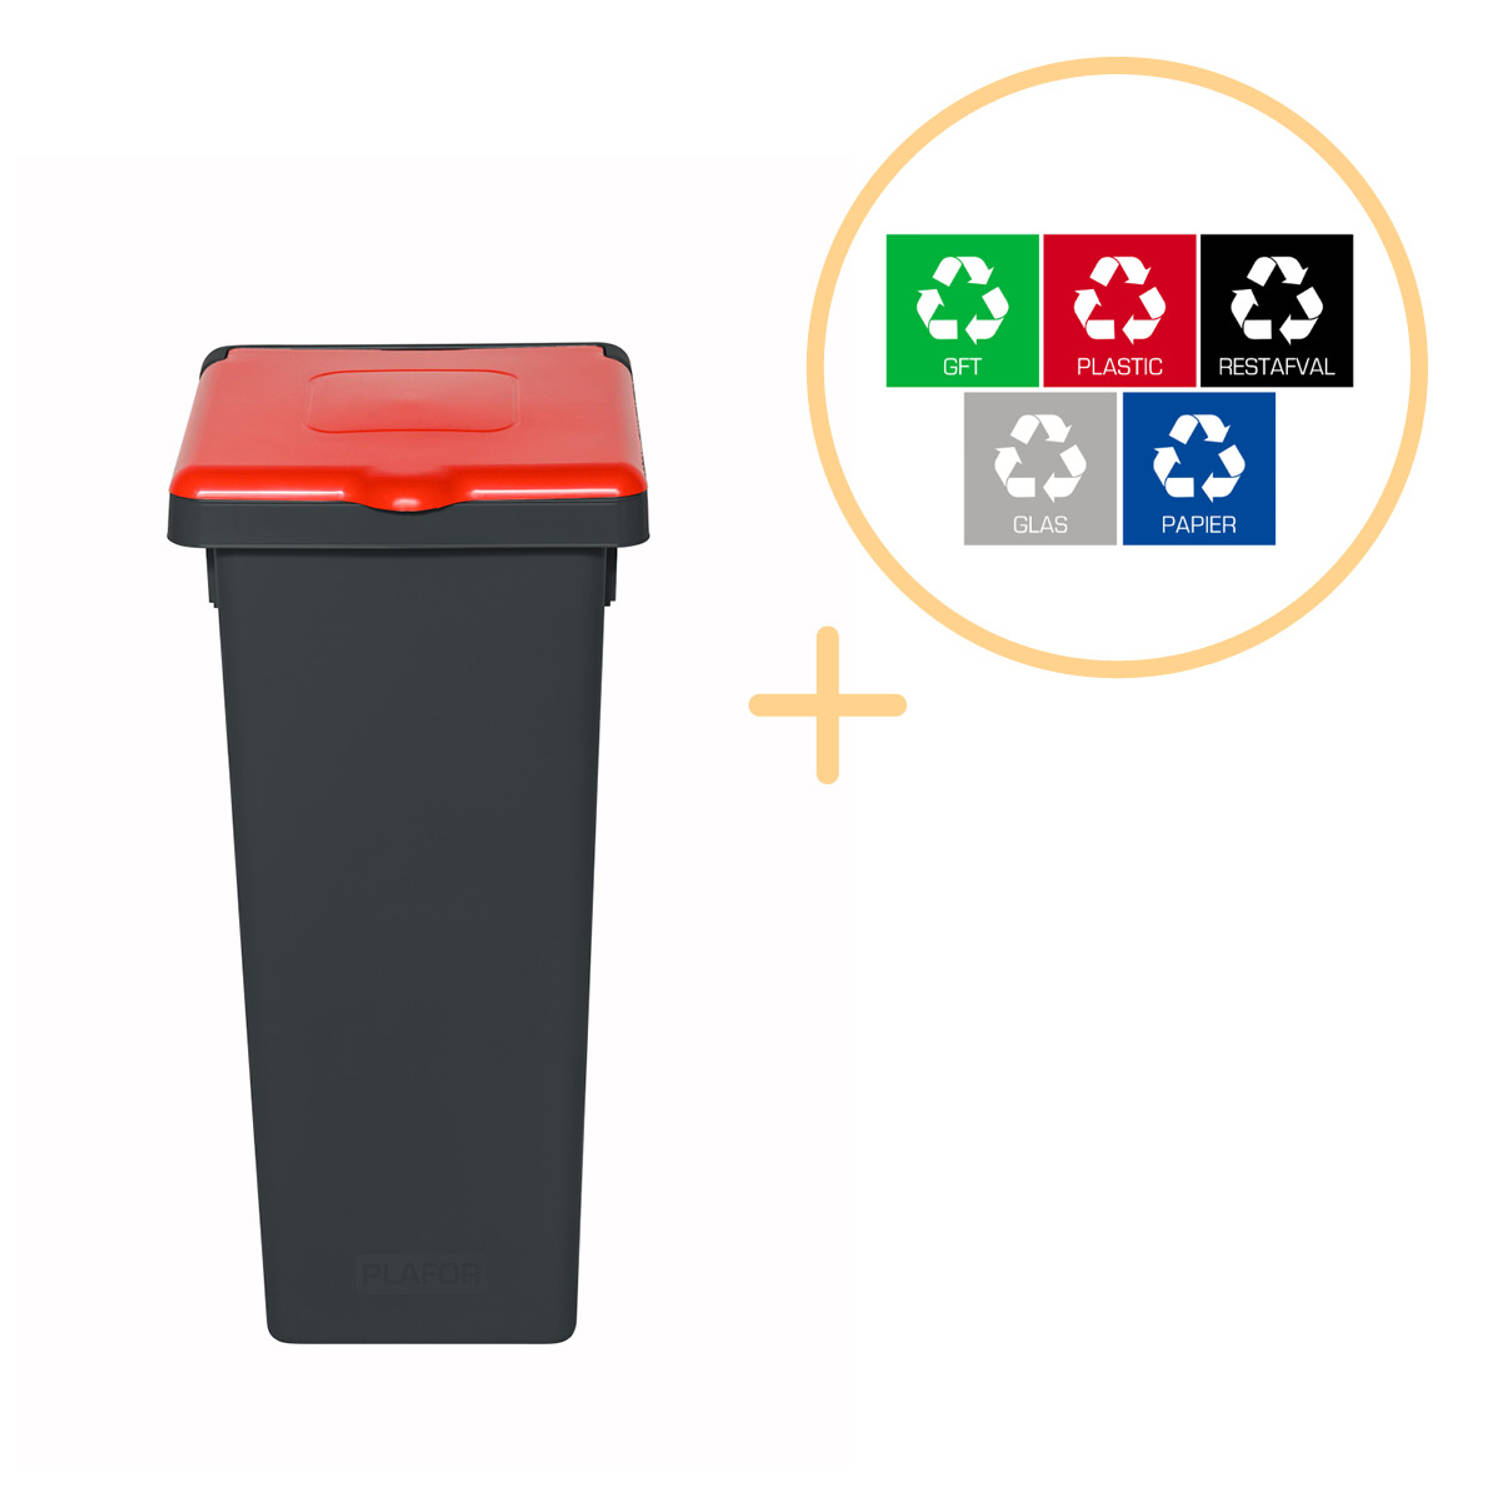 Plafor Fit Bin, Prullenbak met Deksel voor Afvalscheiding - 53L – Grijs/Rood- Inclusief 5-delige Stickerset - Afvalbak voor gemakkelijk Afval Scheiden en Recycling - Afvalemmer - V